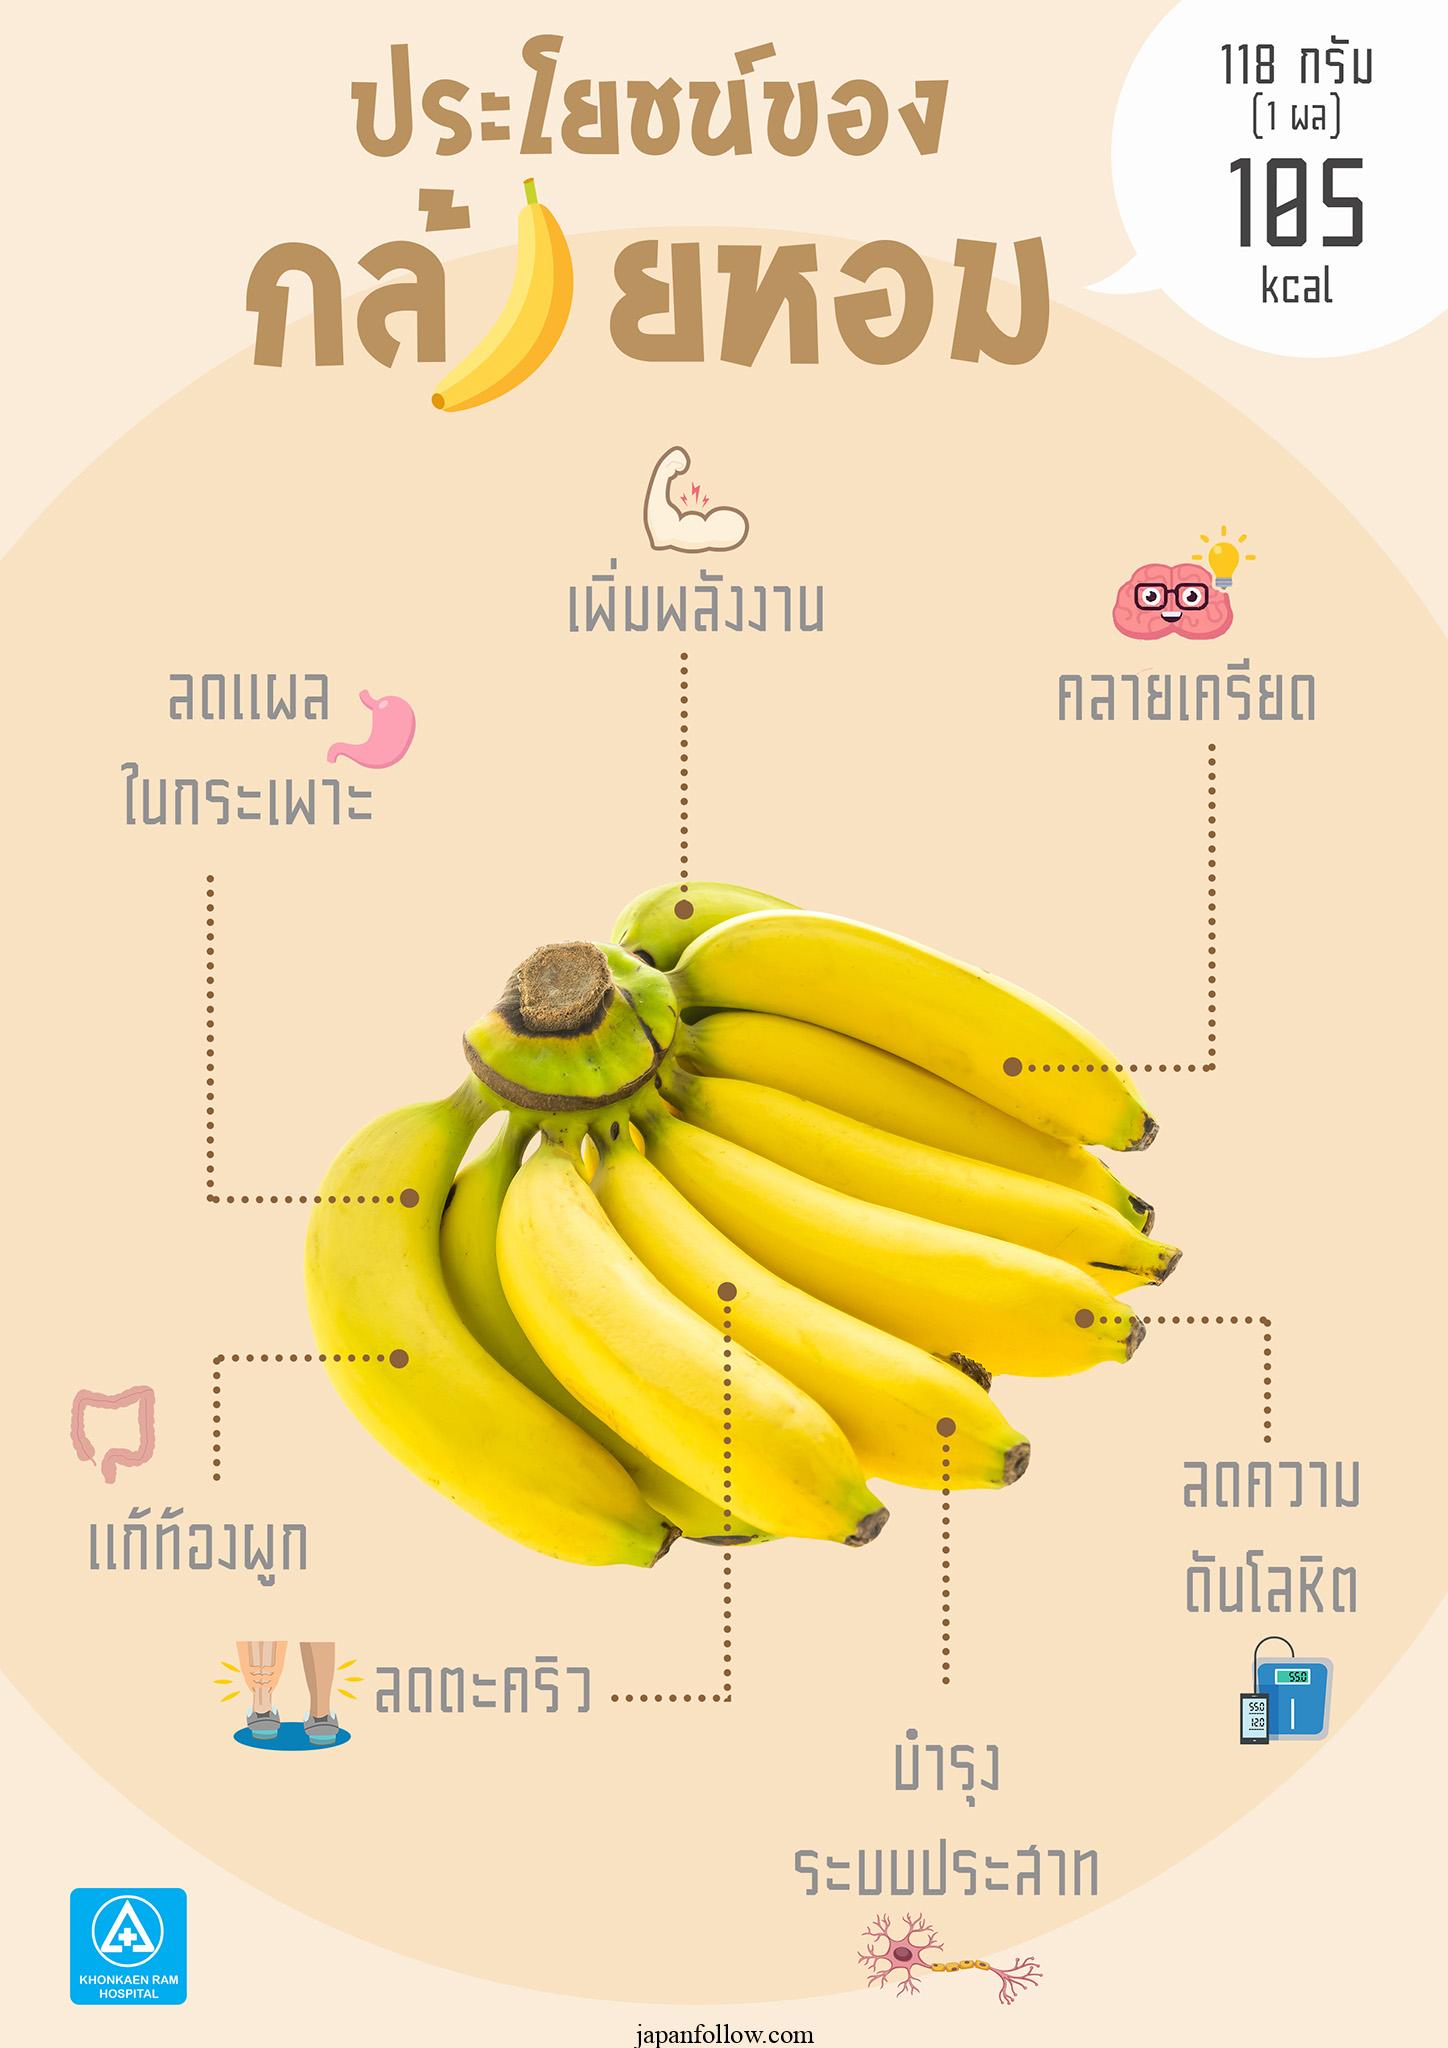 Vorteile von Bananen